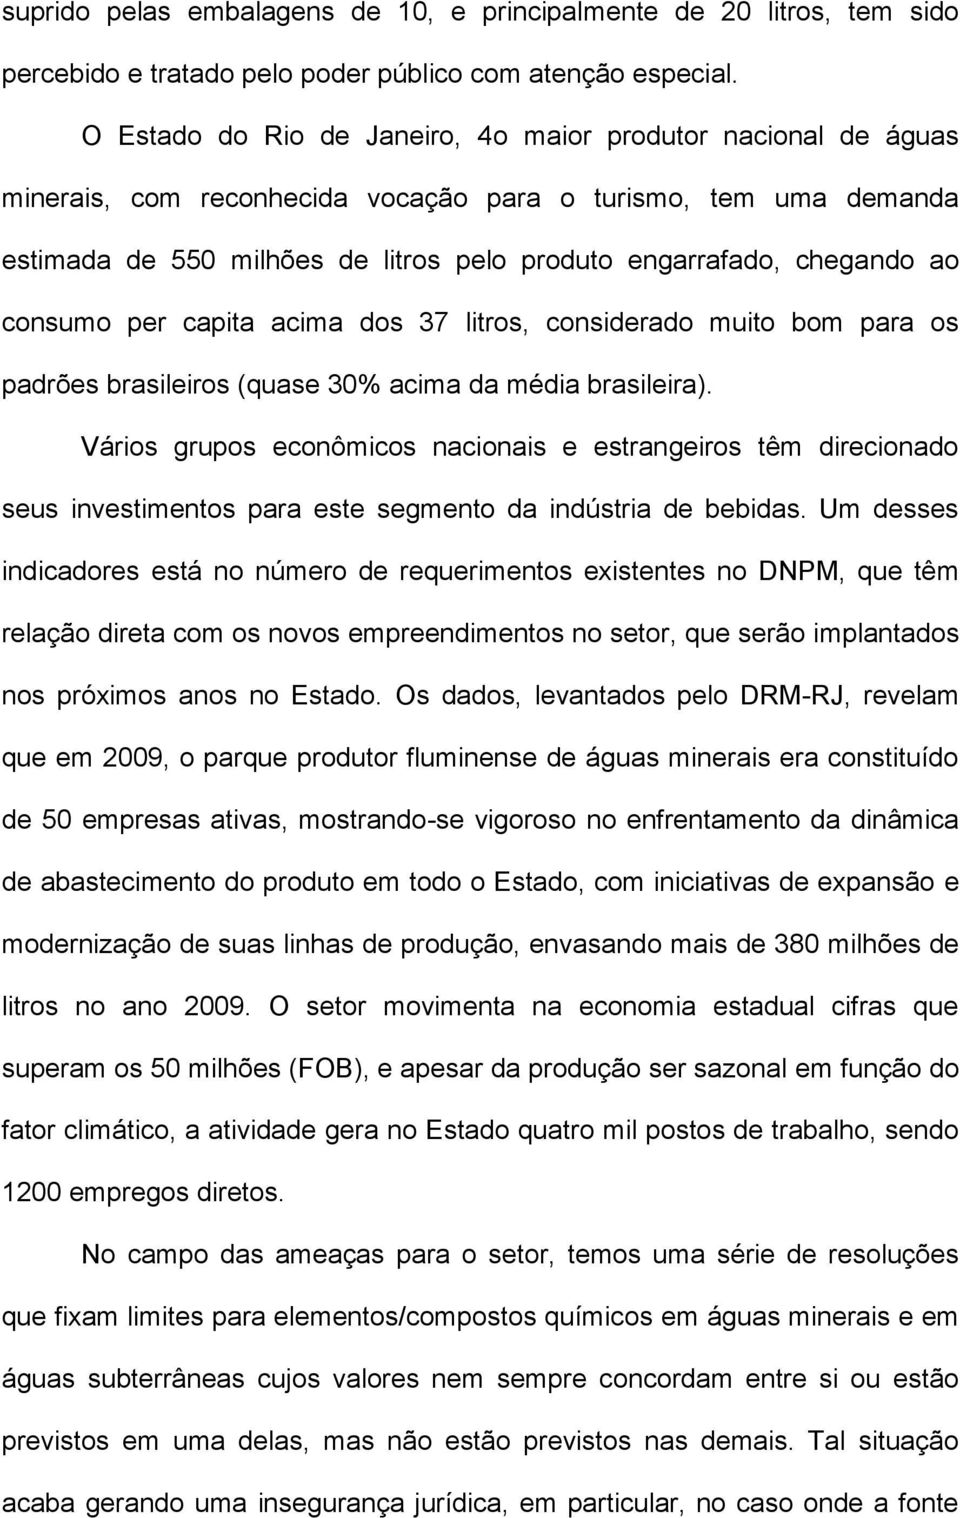 ao consumo per capita acima dos 37 litros, considerado muito bom para os padrões brasileiros (quase 30% acima da média brasileira).